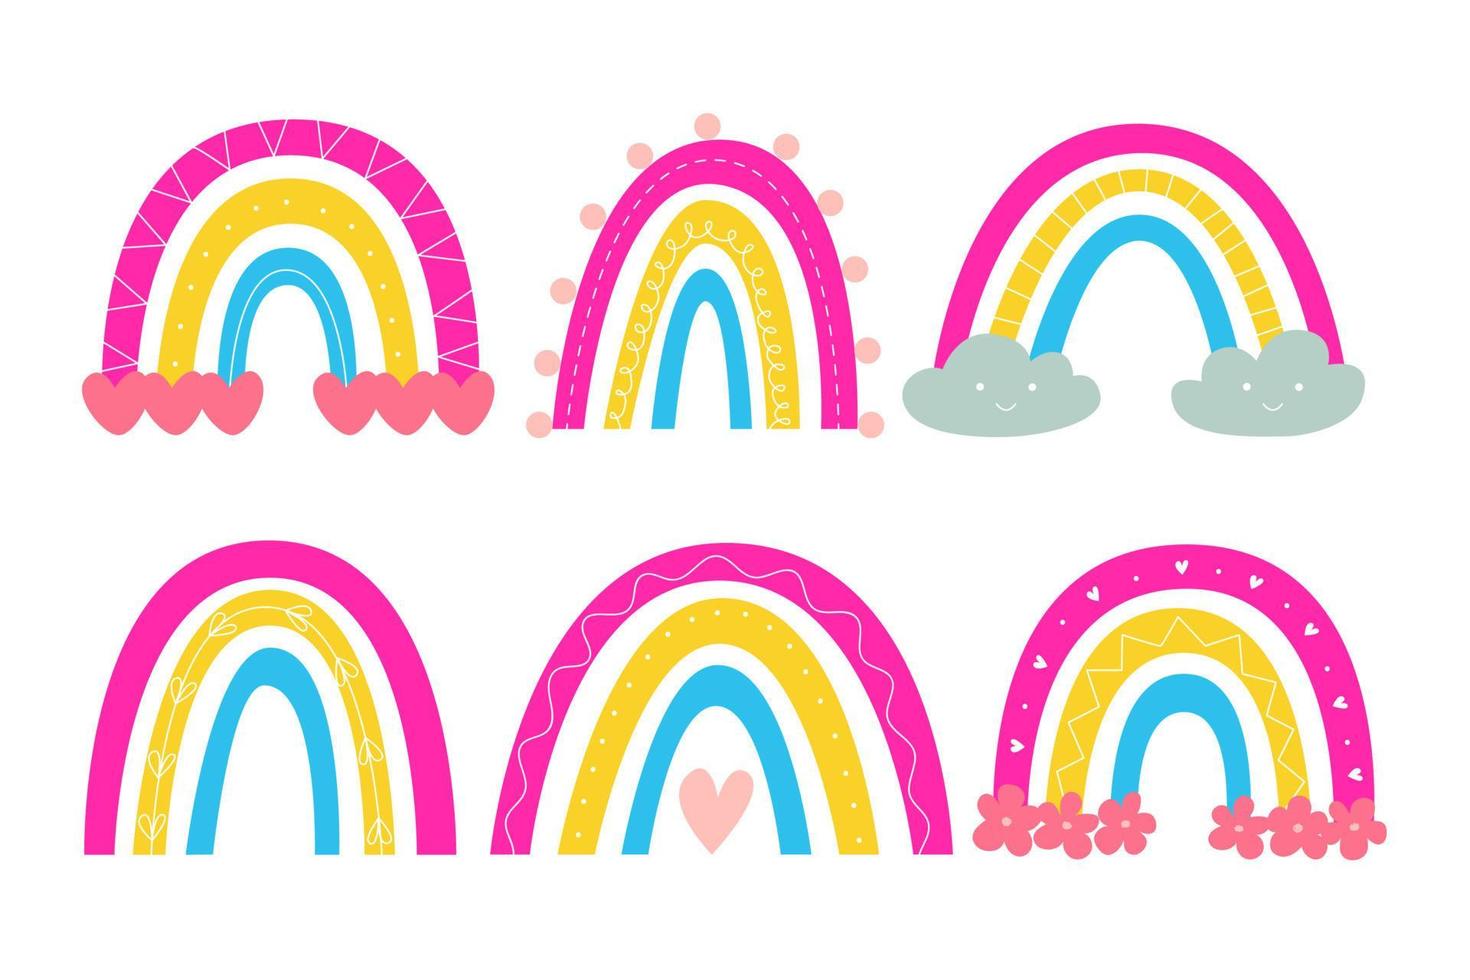 establecer lindo arco iris escandinavo en colores bandera pansexual. pegatinas para el orgullo lgbtq. ilustración vectorial en estilo ingenuo de dibujos animados. vector